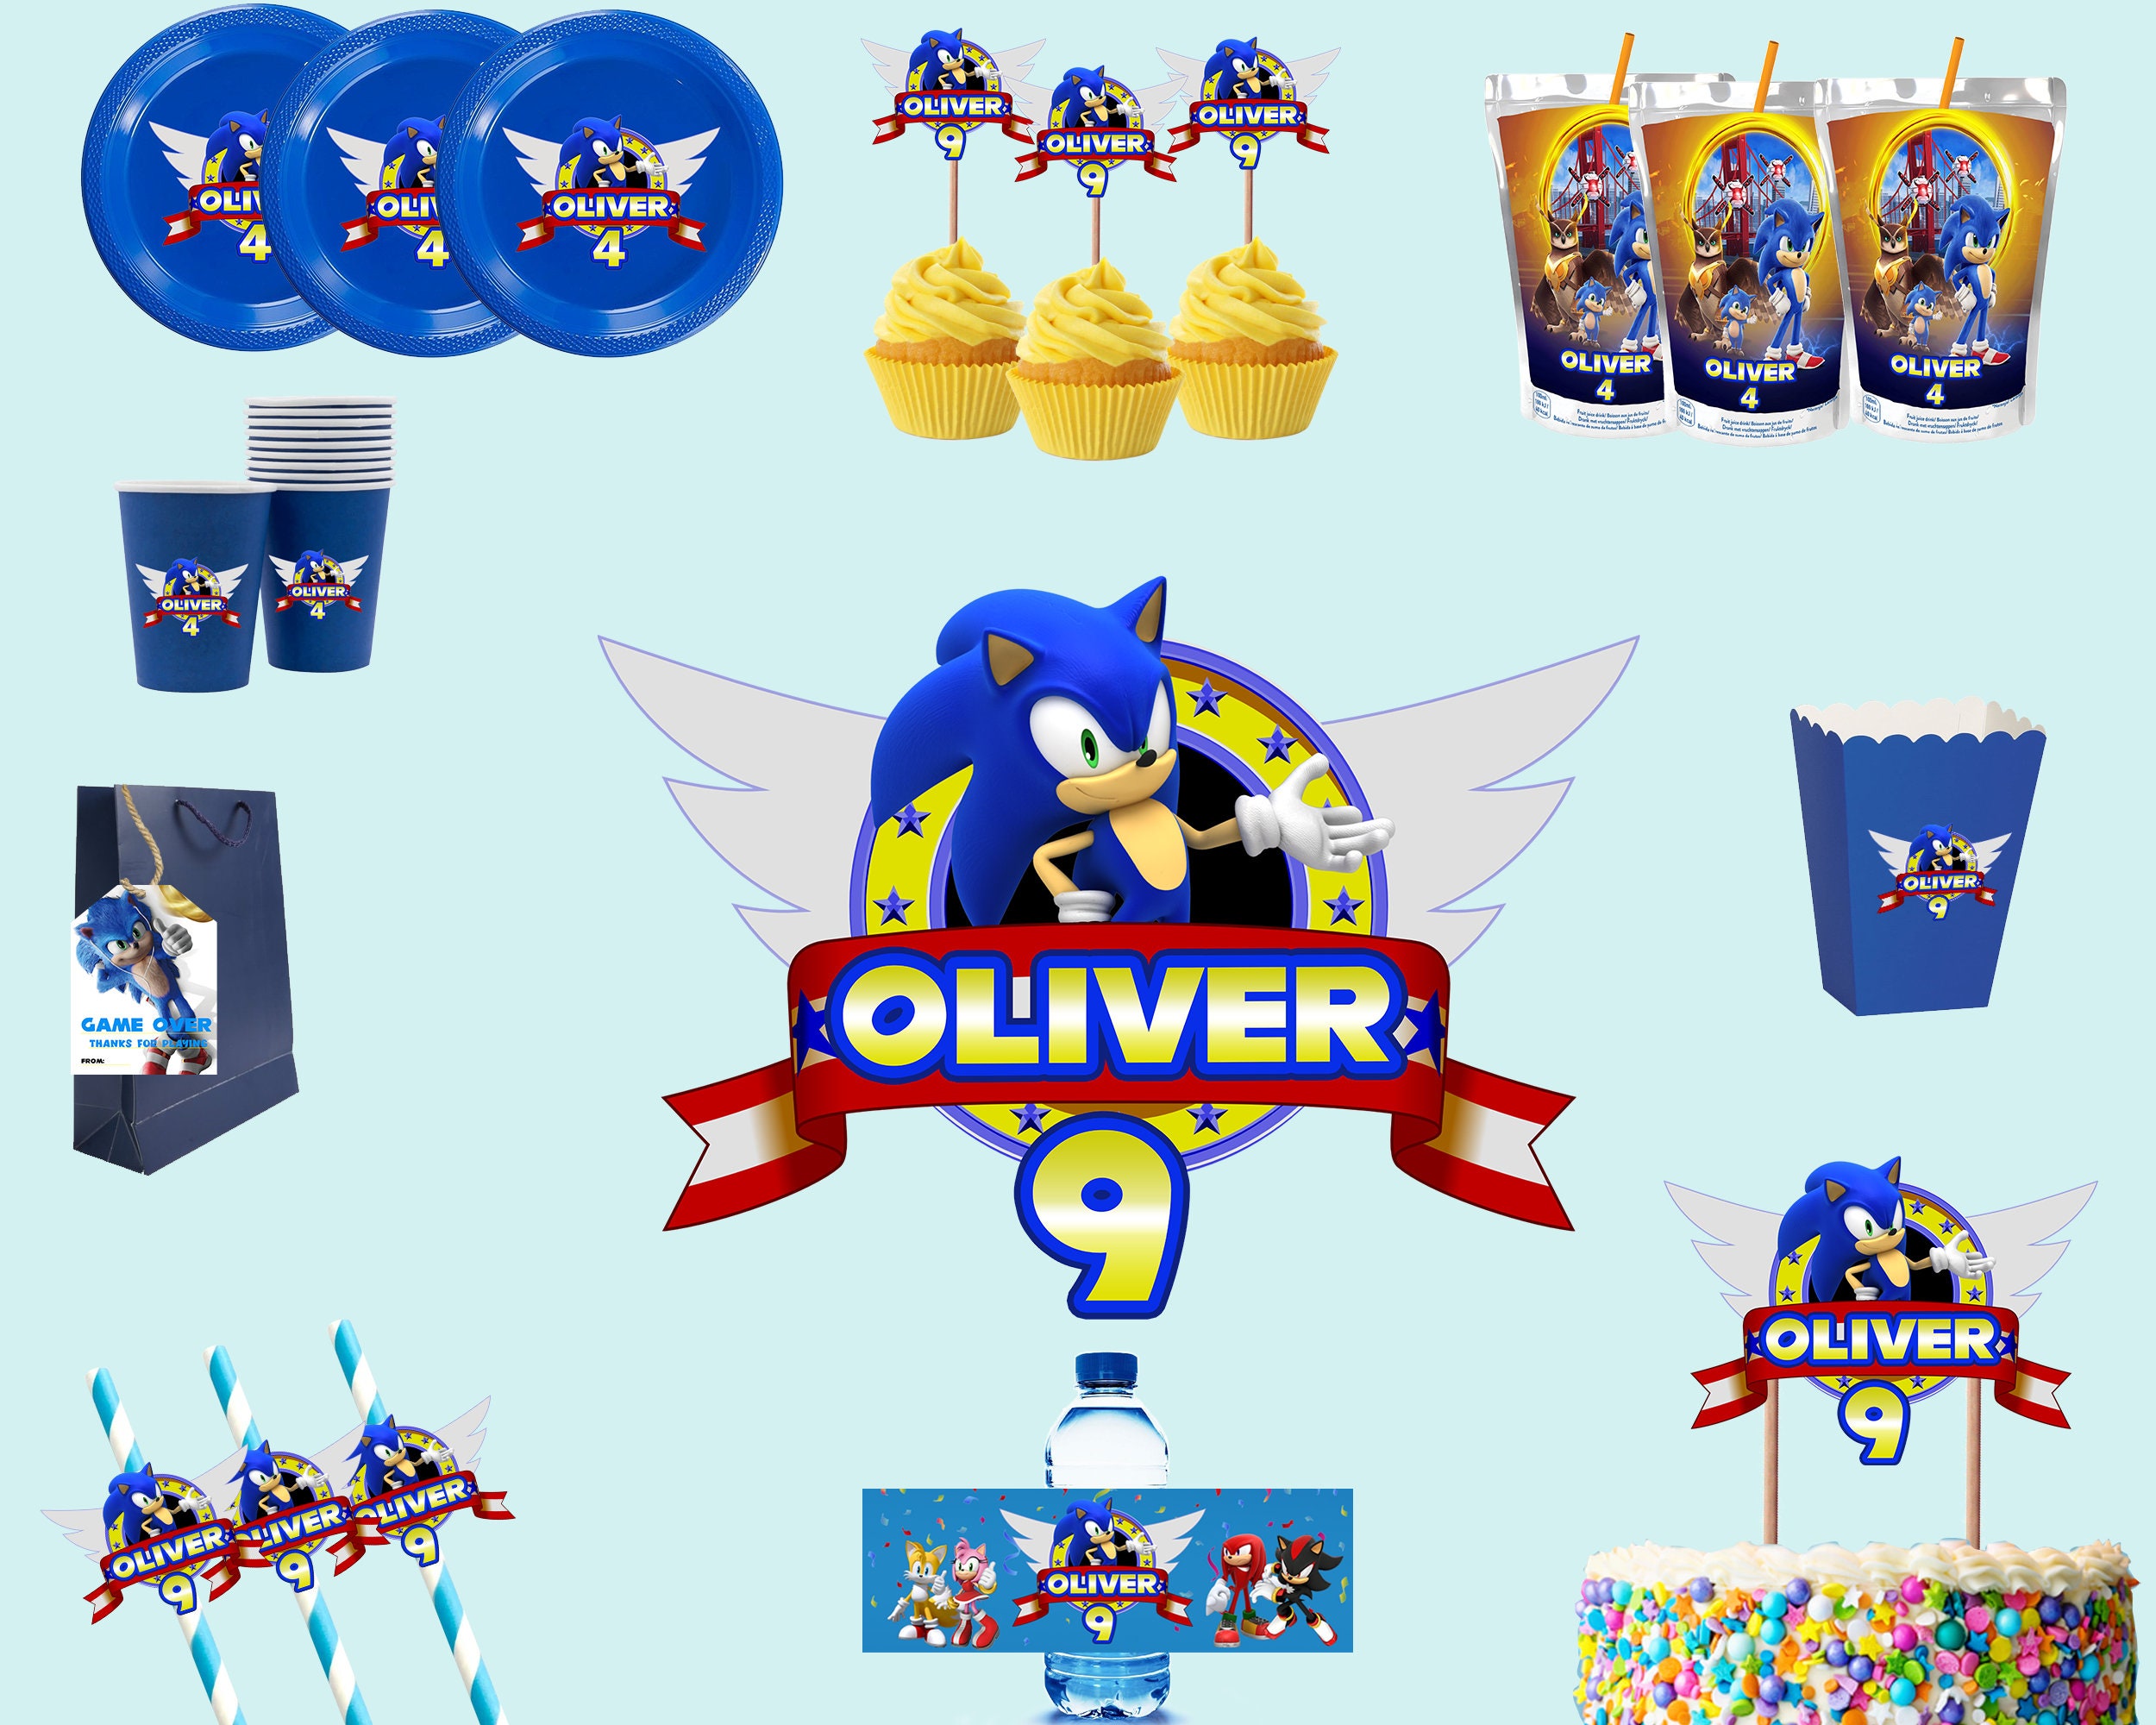 Kit per 8 persone tema Sonic, kit compleanno originale